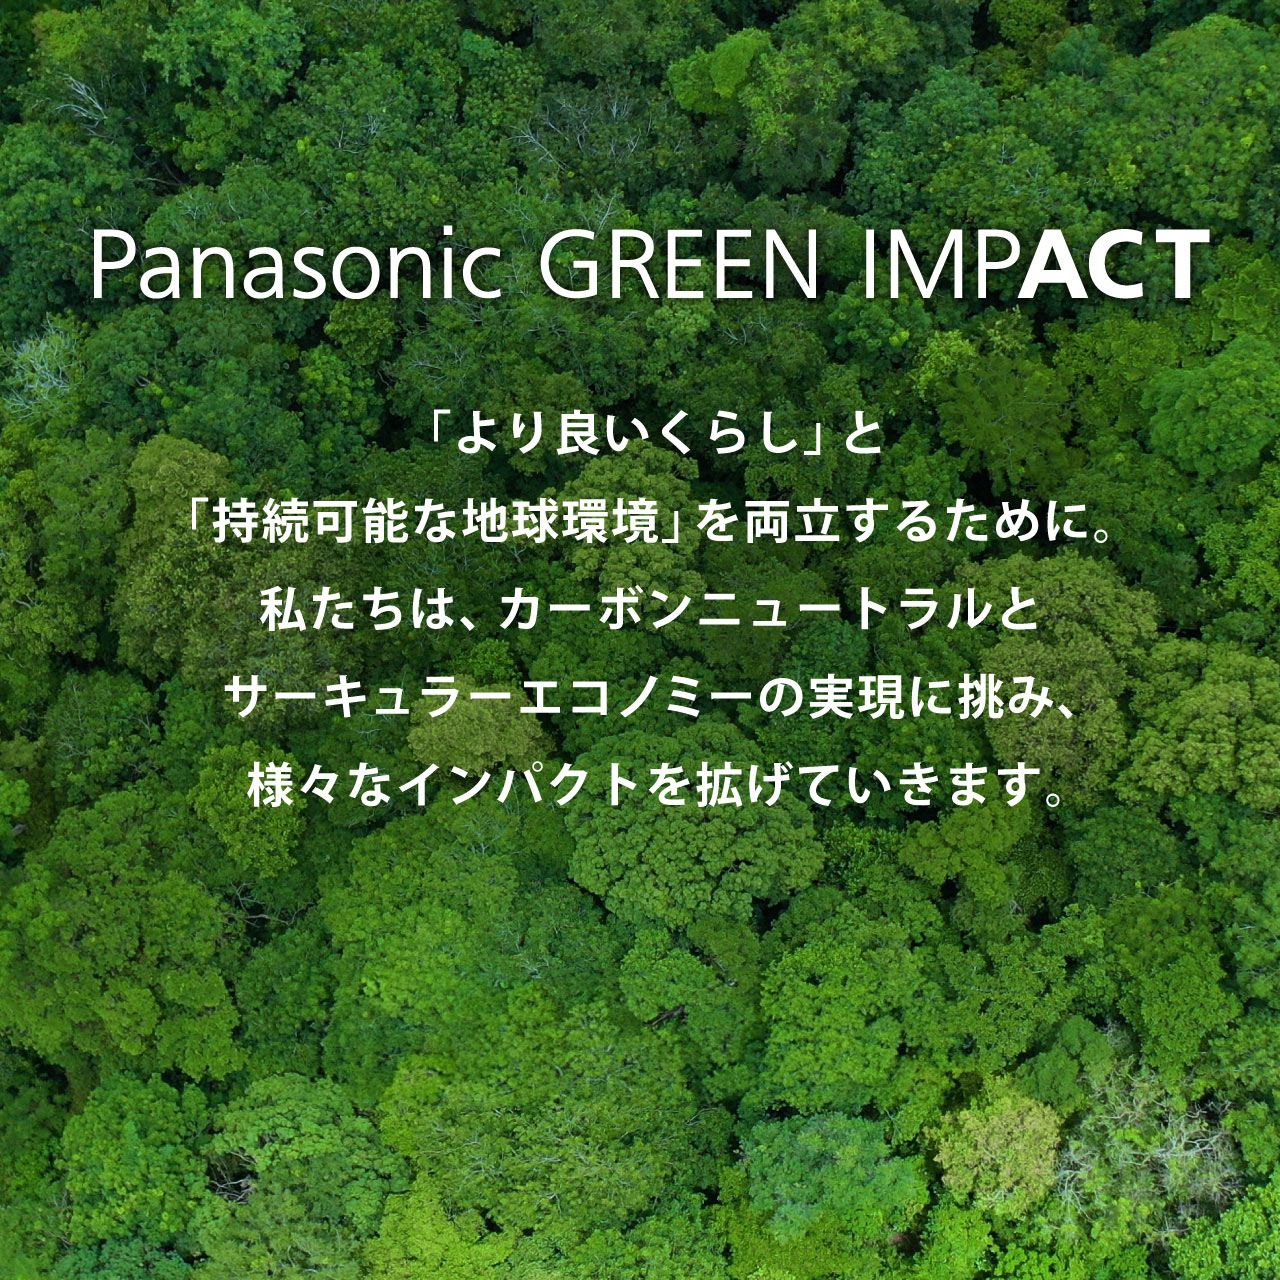 Panasonic GREEN IMPACT 「より良いくらし」と「持続可能な地球環境」を両立するために。私たちは、カーボンニュートラルとサーキュラーエコノミーの実現に挑み、様々なインパクトを拡げていきます。